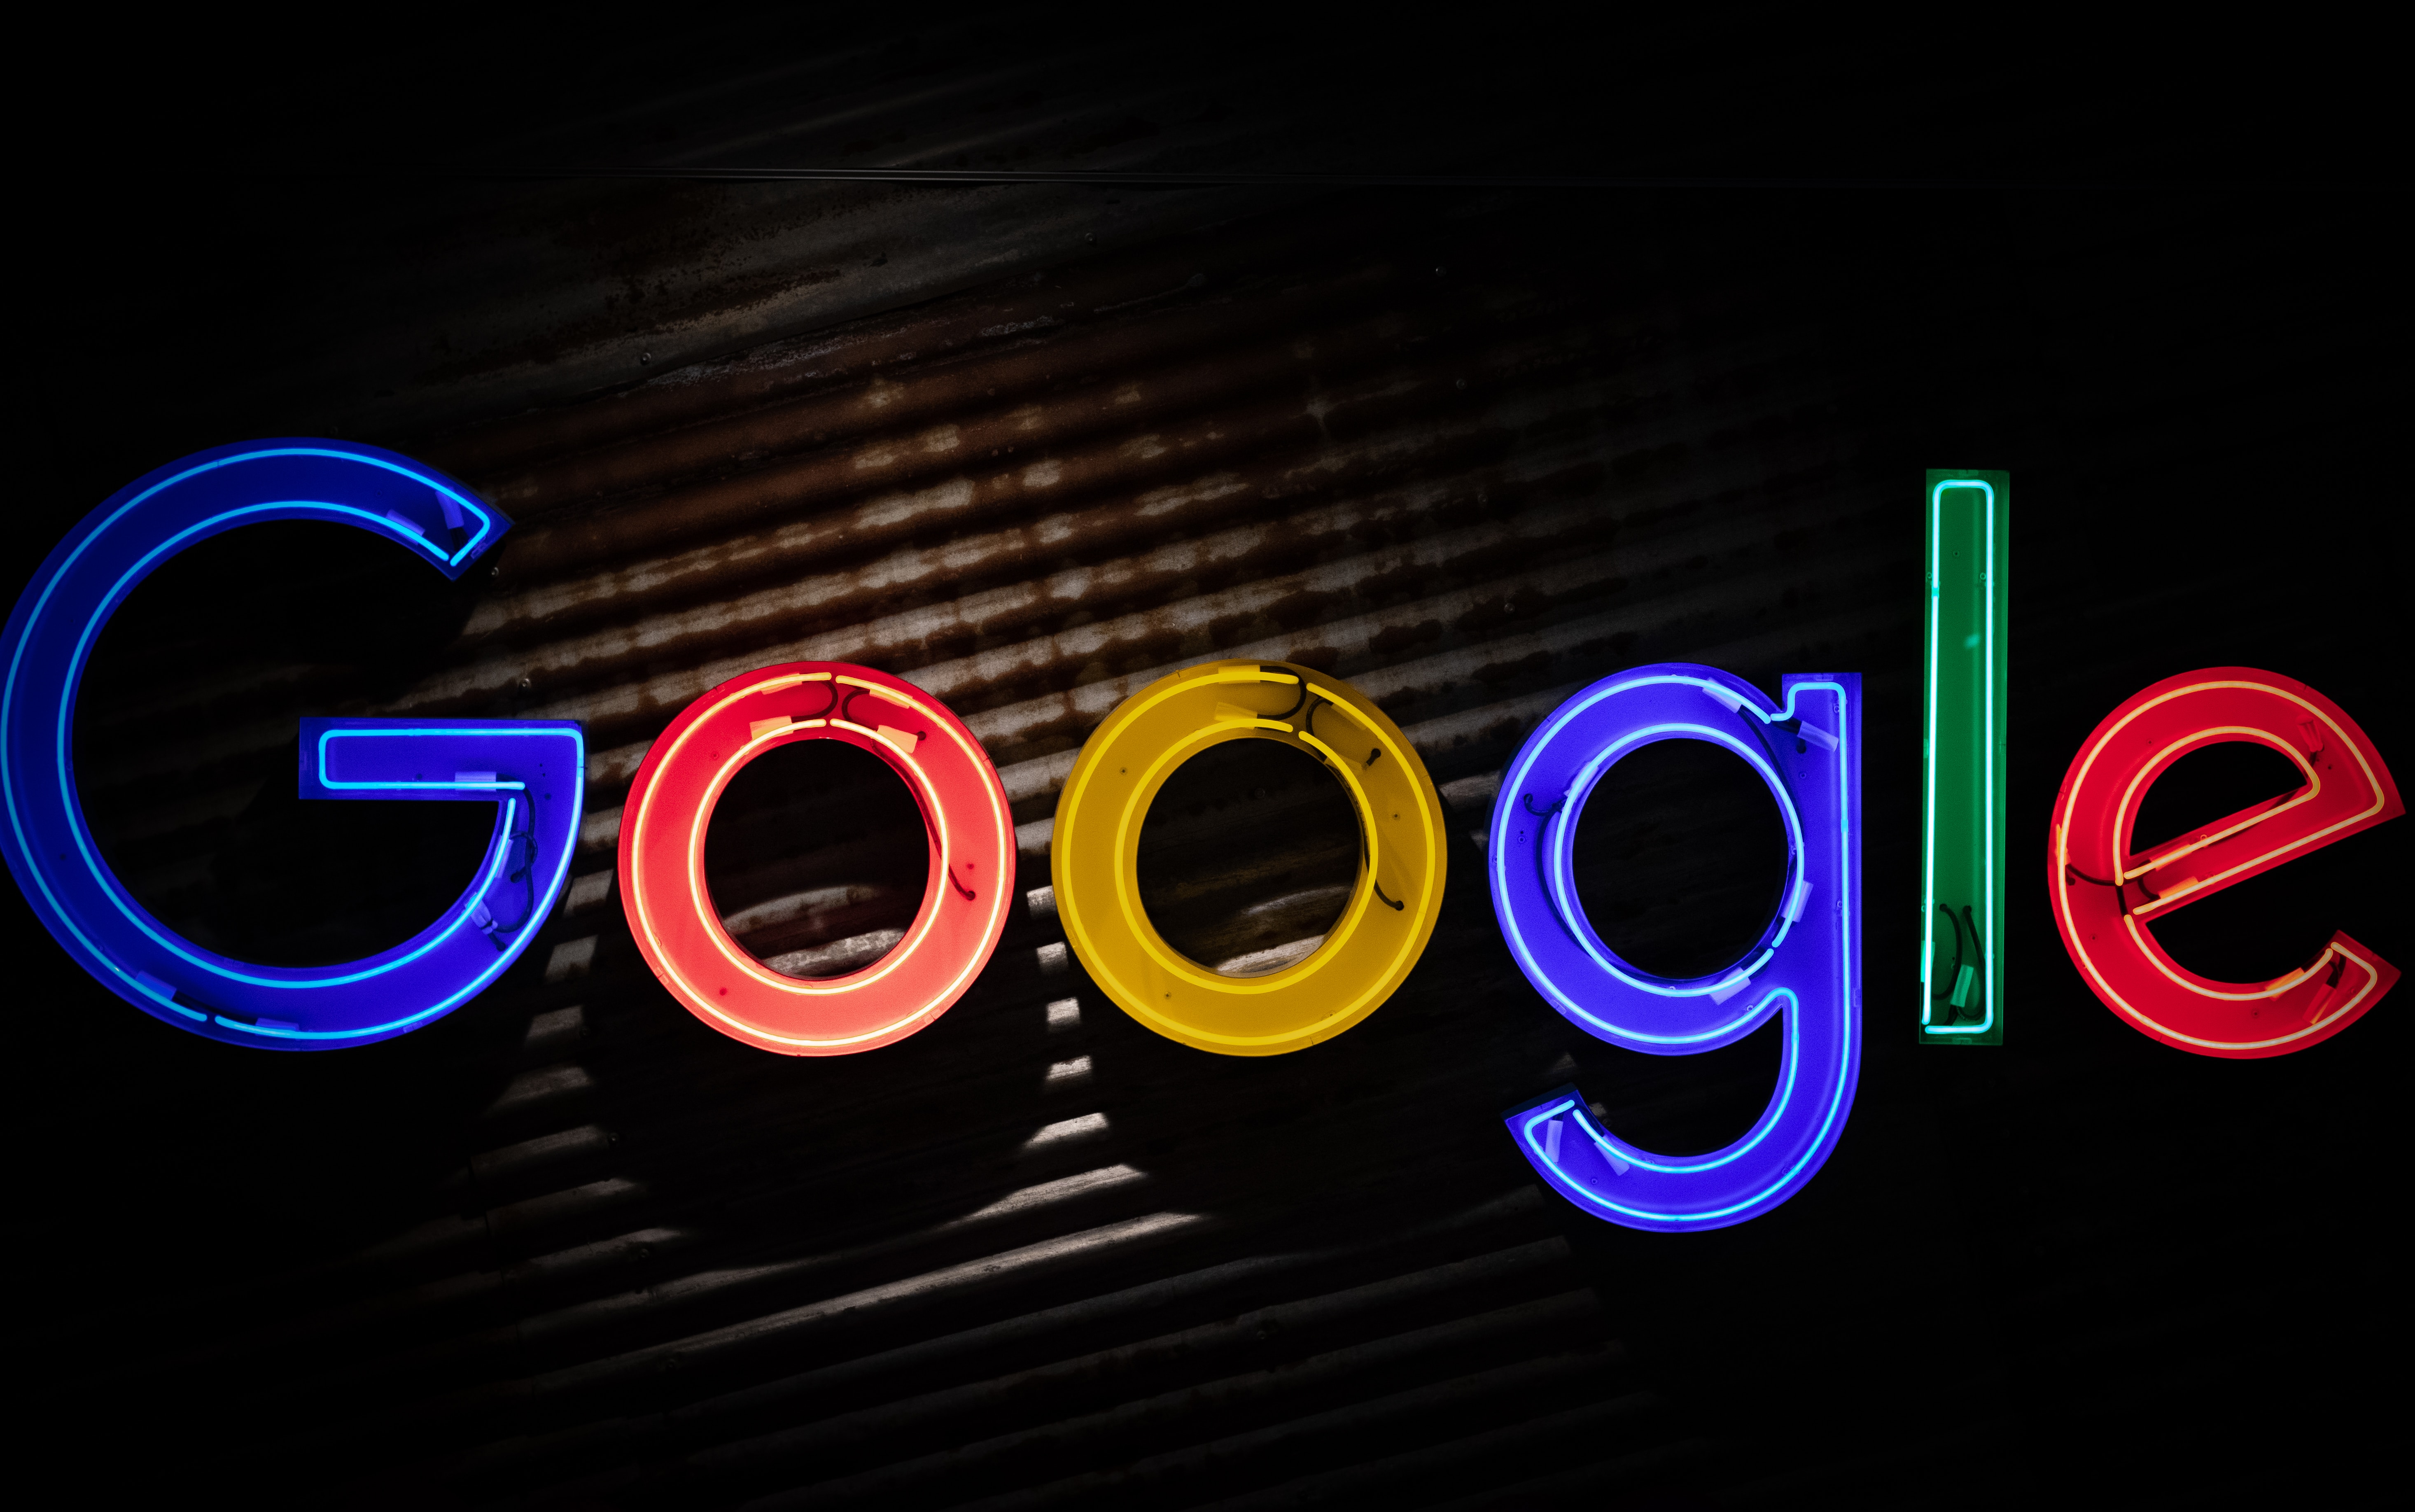 Google Actualités pour Android fait peau neuve ! Des contenus plus personnalisés mis en avant